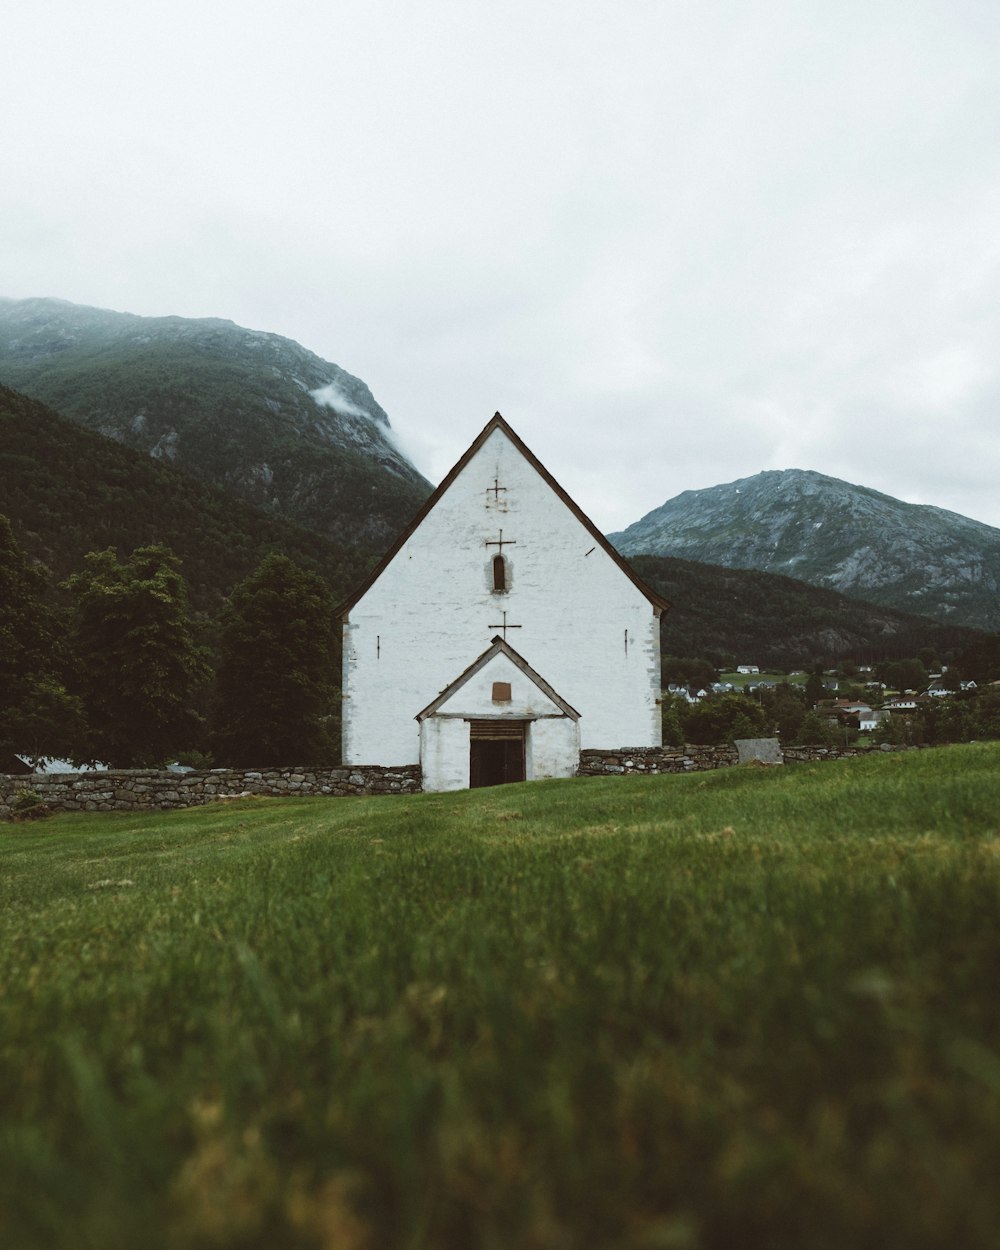 White concrete church near mountain peaks photo – Free Norway Image on ...